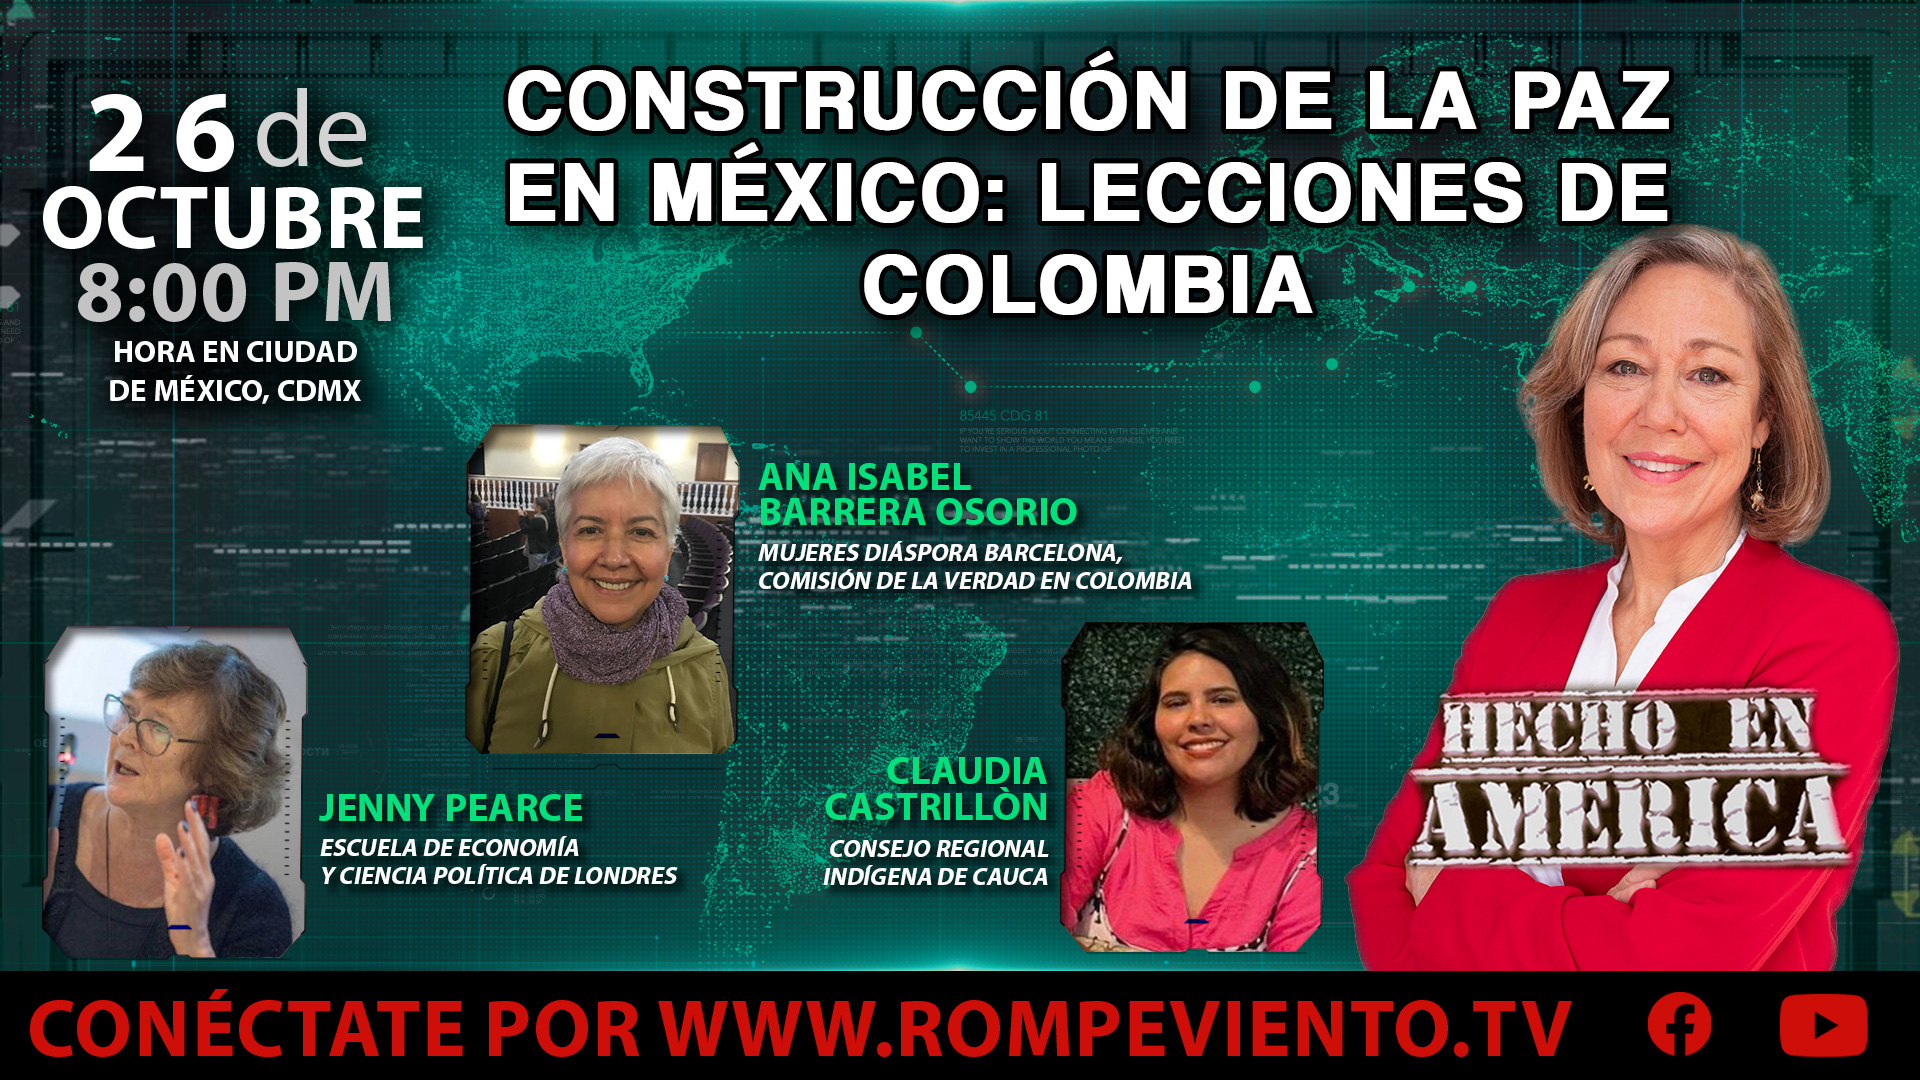 Construcción de la paz en México: Lecciones de Colombia - Hecho en América